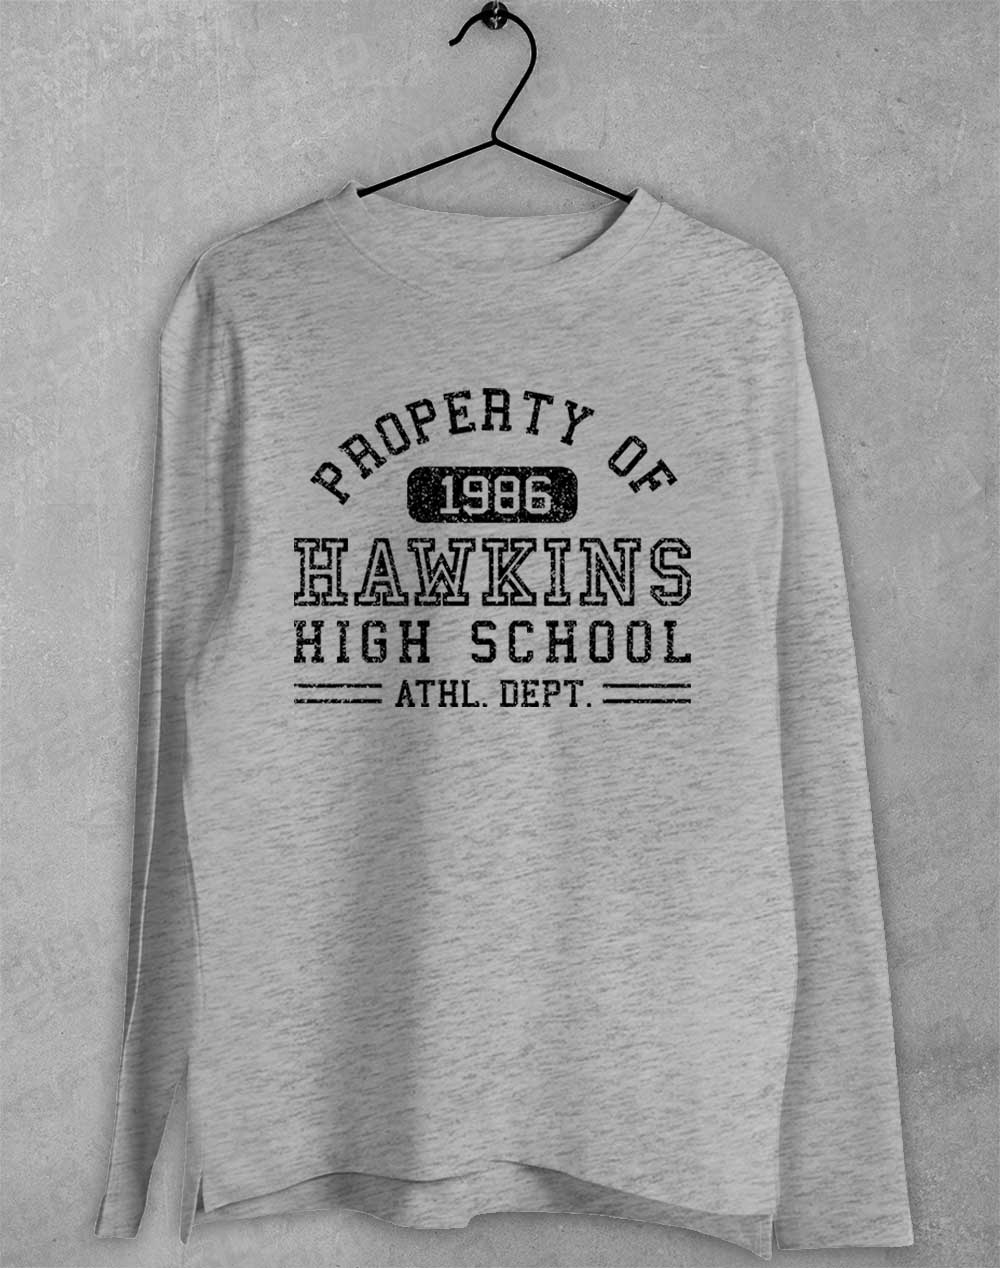 Sport Grey - Hawkins High School Athletics 1986 Long Sleeve T-Shirt